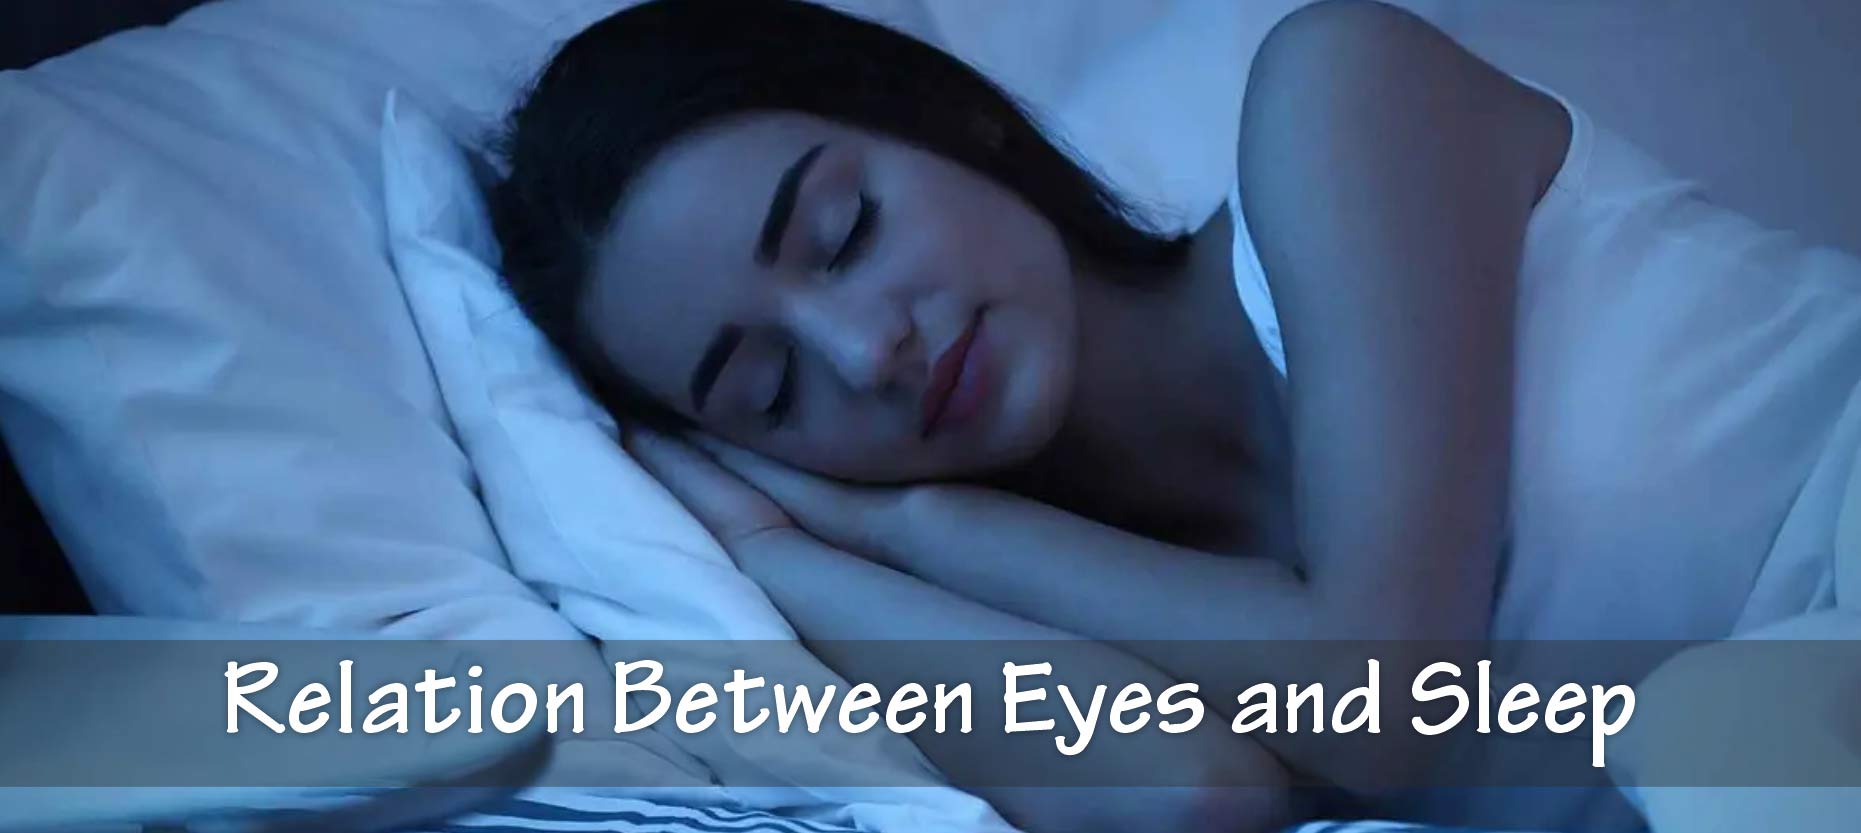 Relation Between Eyes and Sleep